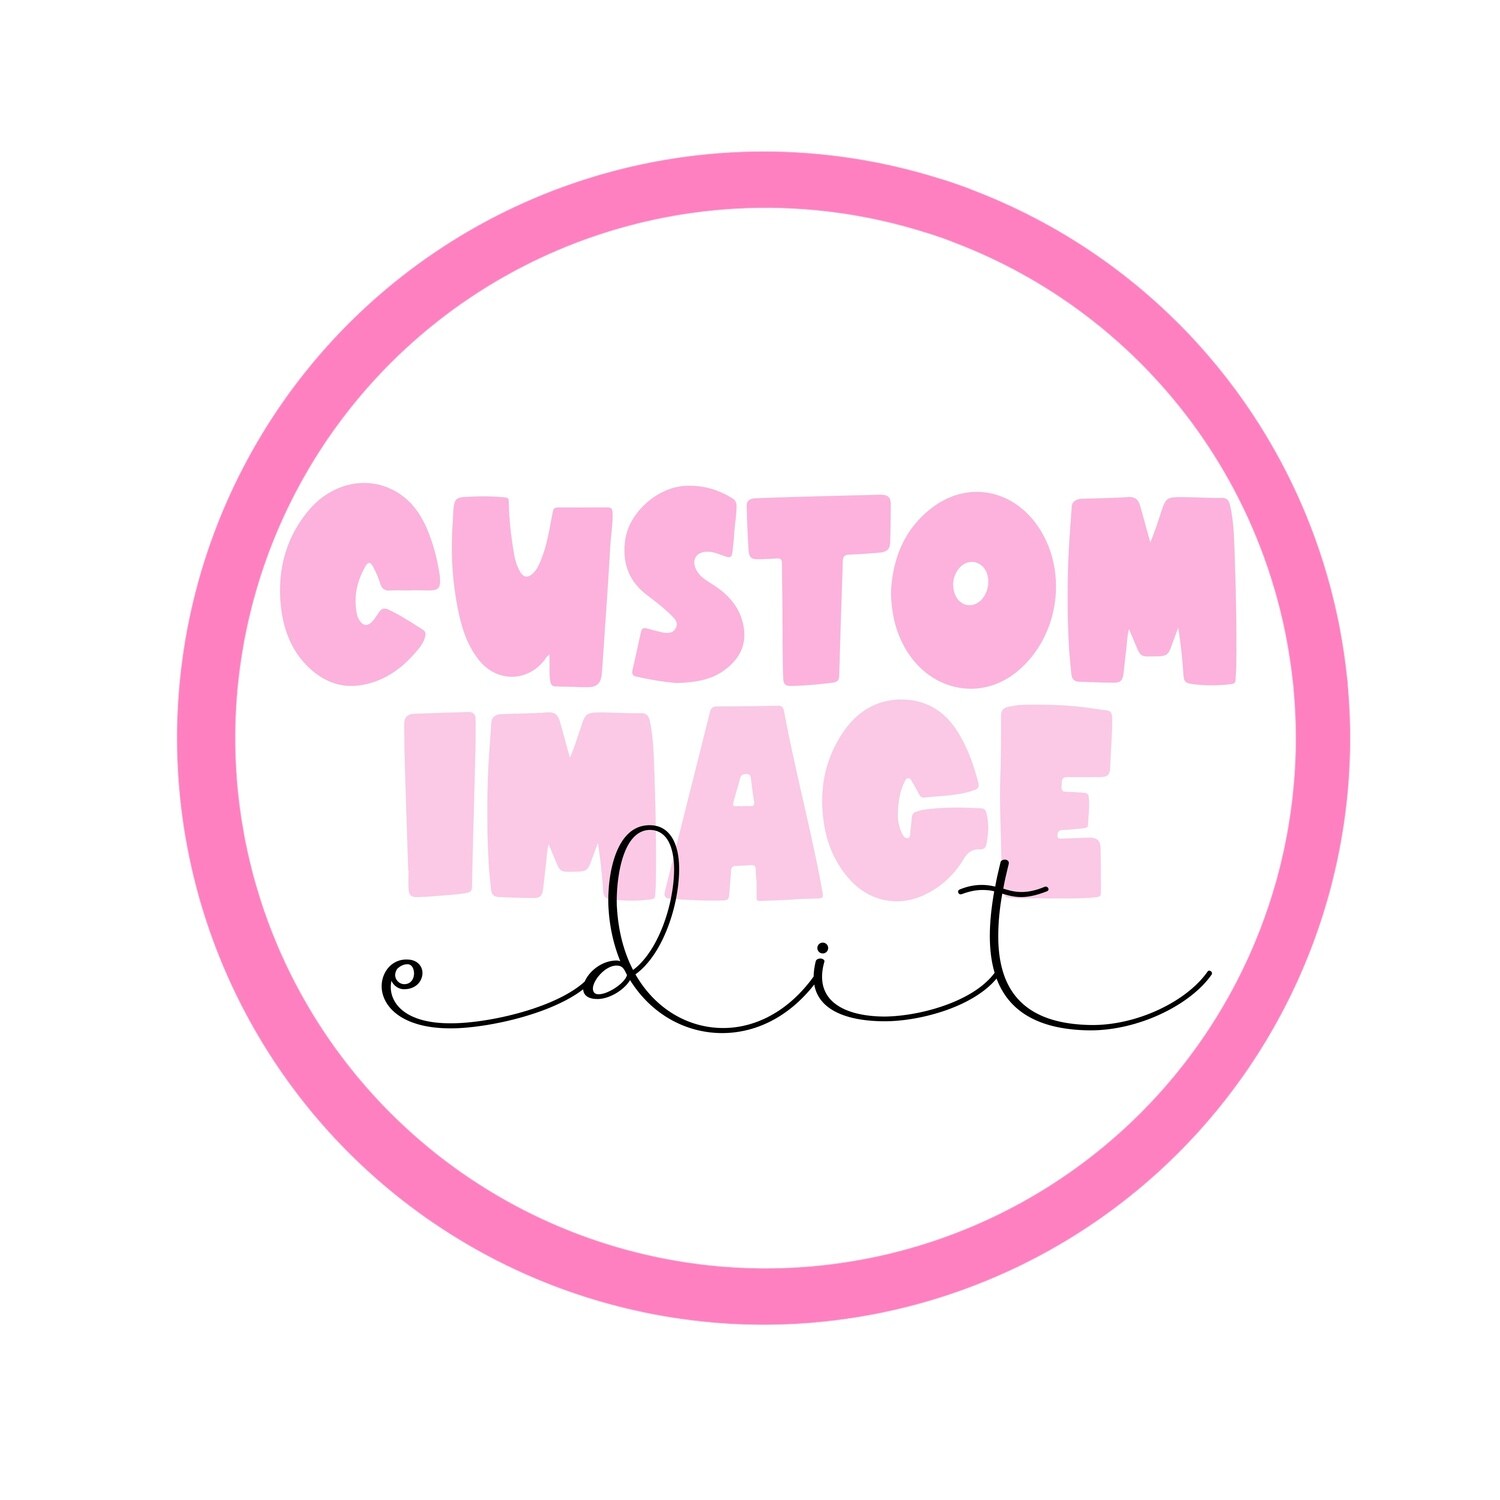 Custom Design (simple)